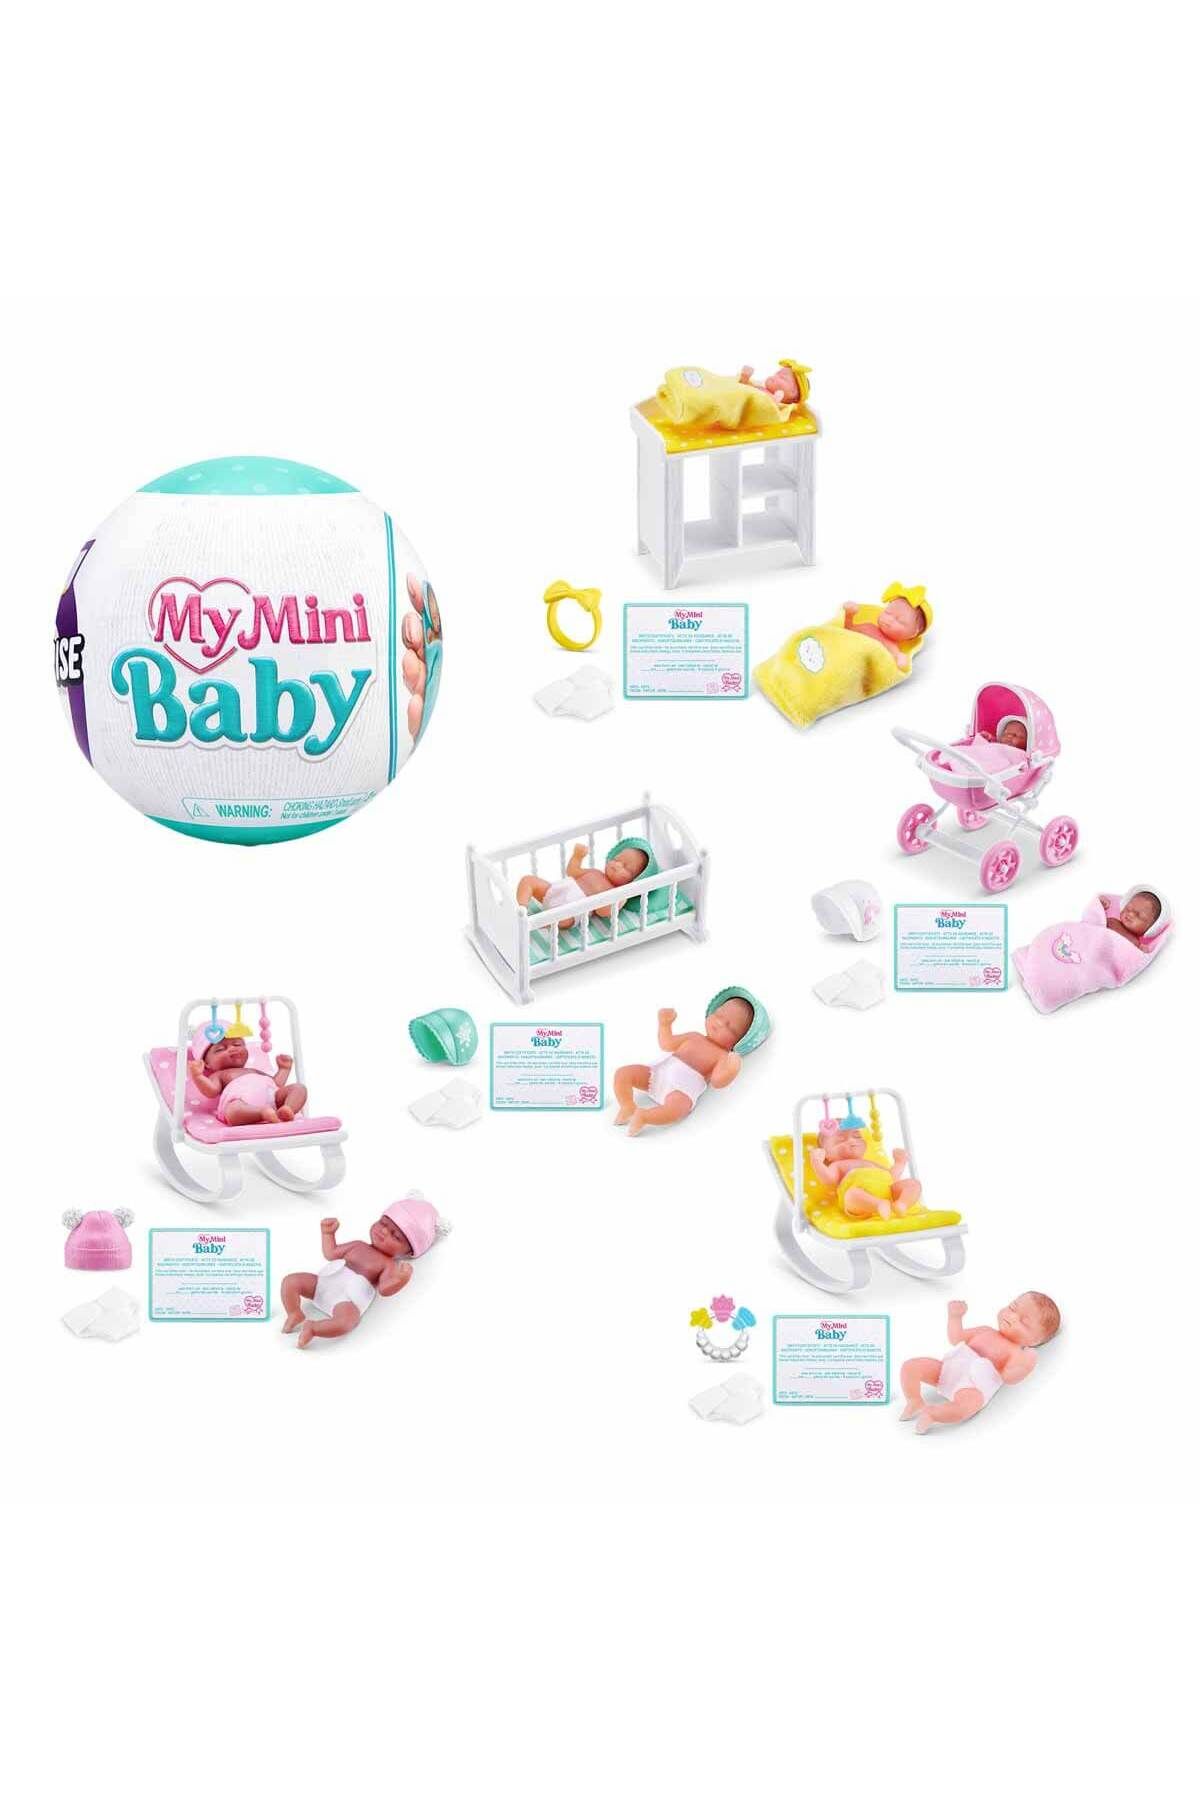 Tower Toys Mini Baby Sürpriz Paket 5UY00000 Çok Gerçekçi! Çok Mini! Çok Şirin!